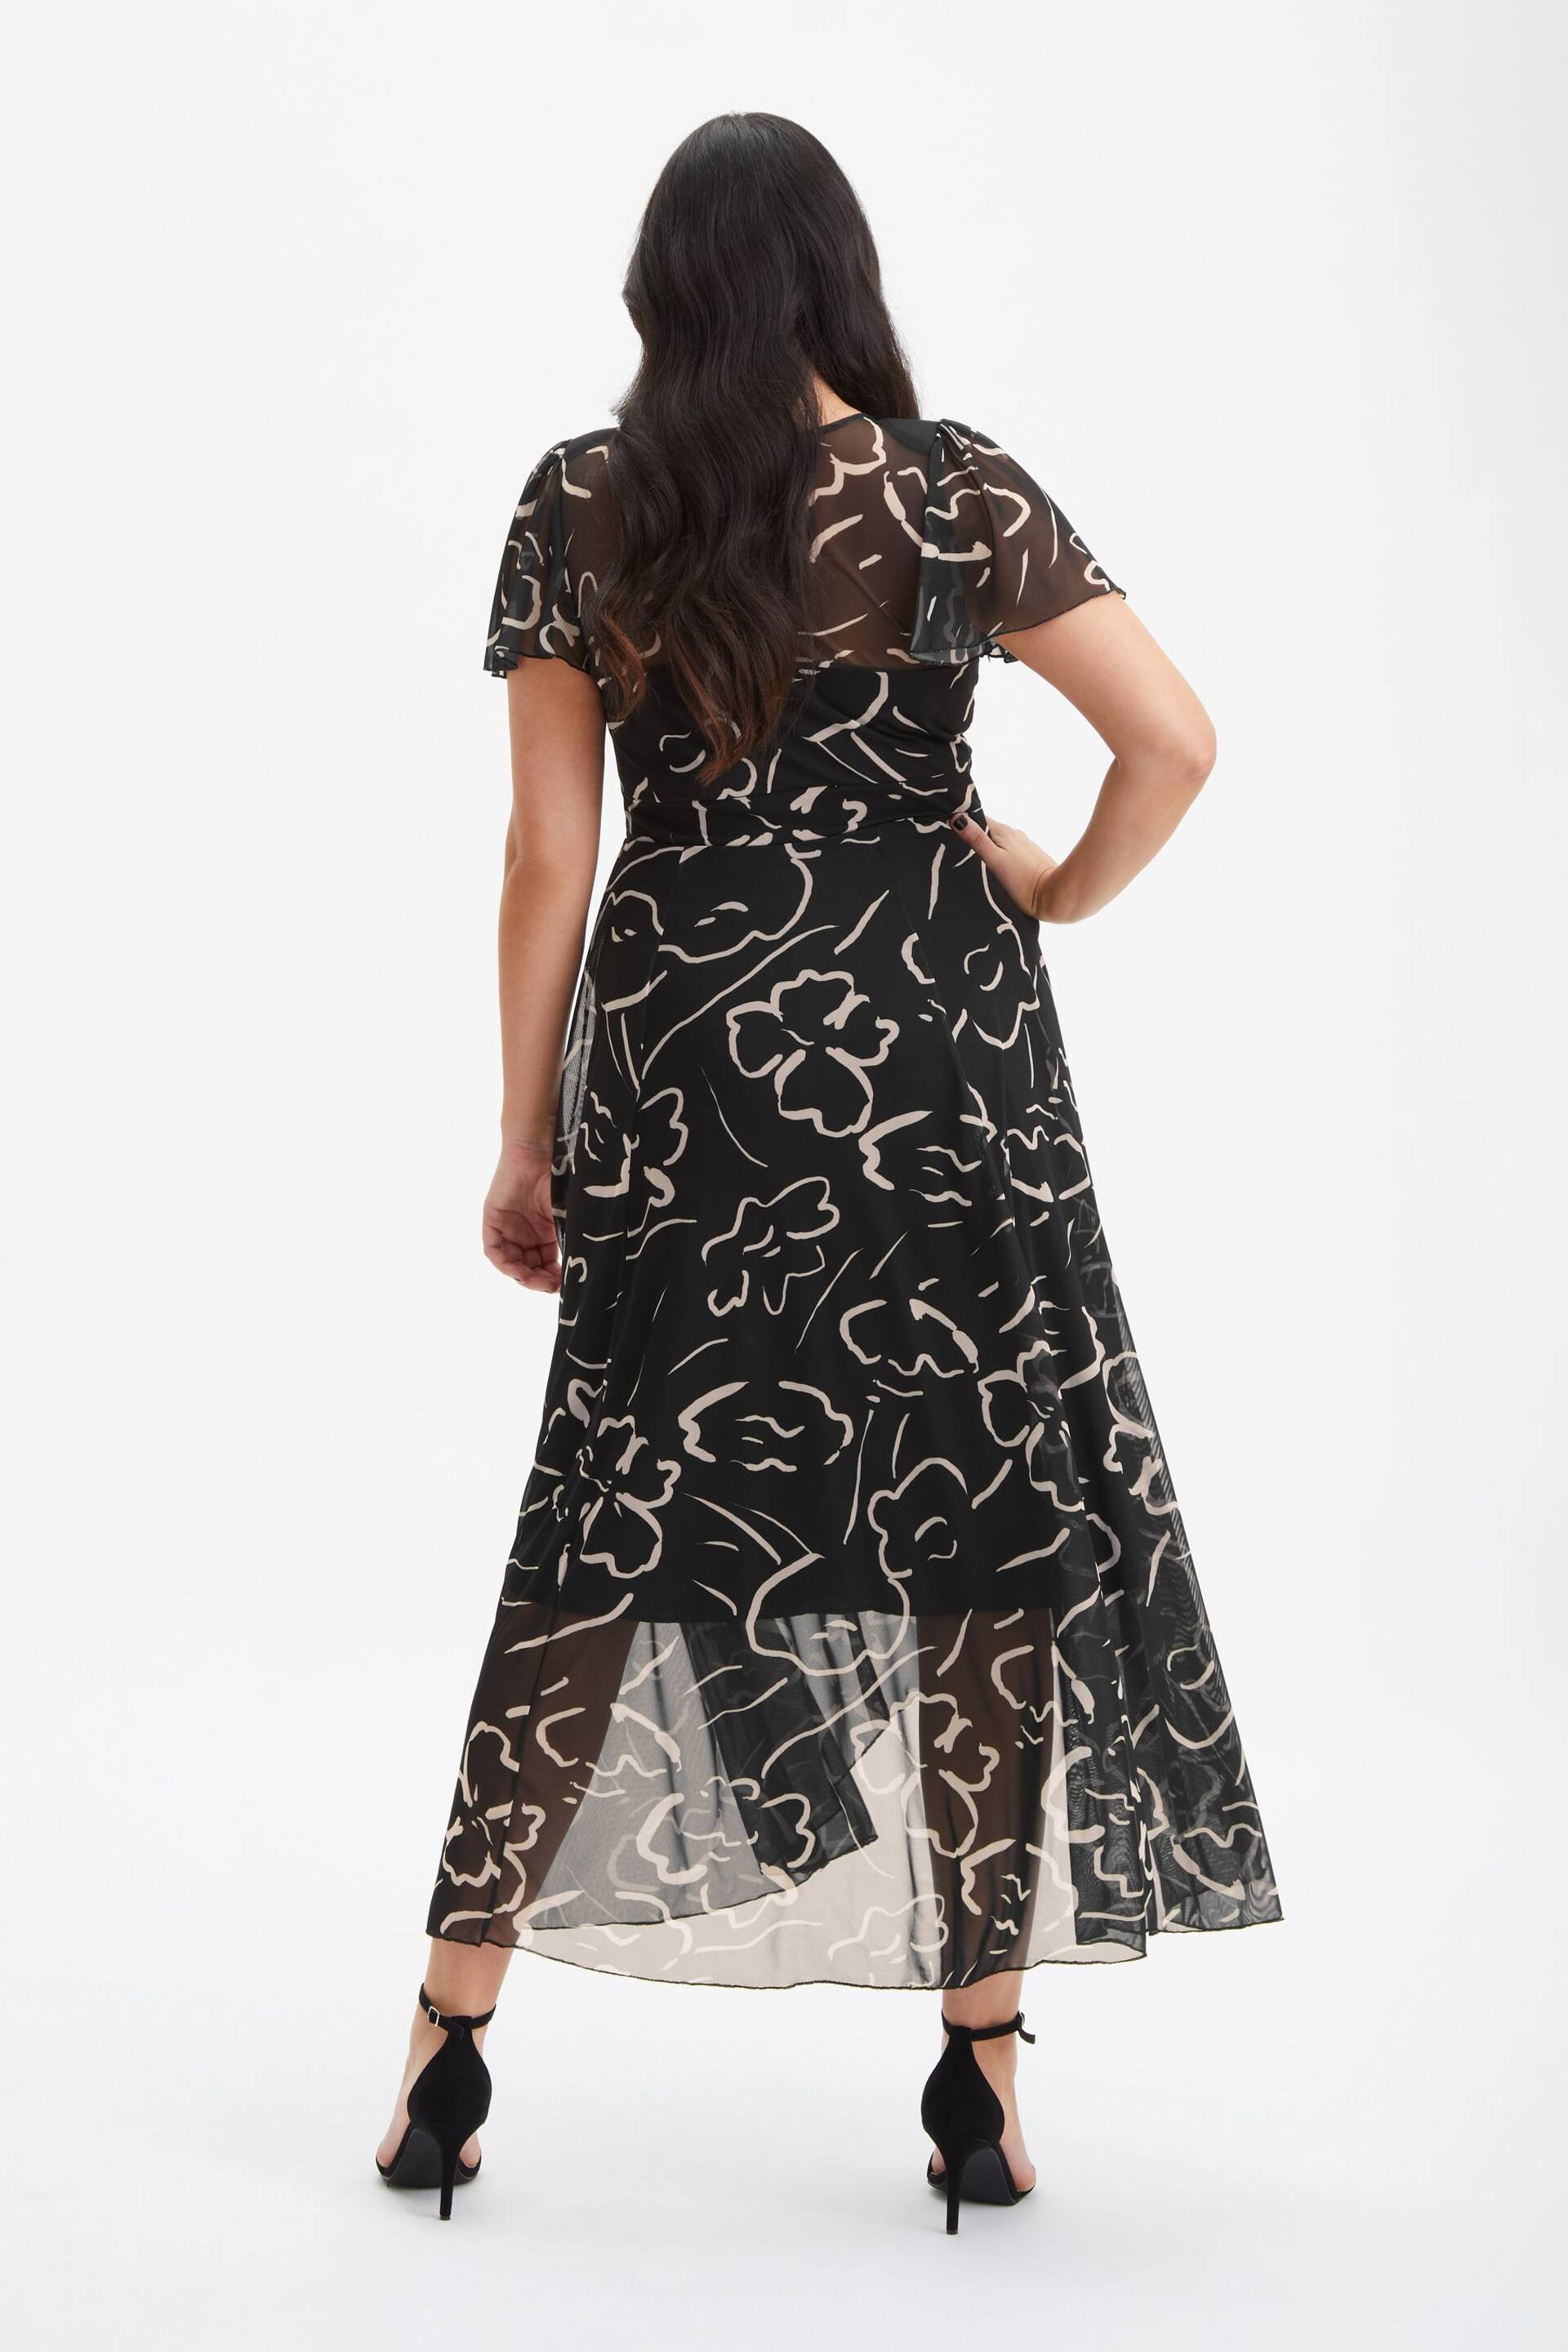 Scarlett & Jo Black Tilly Print Angel Sleeve Sweetheart Dress - Image 2 of 4